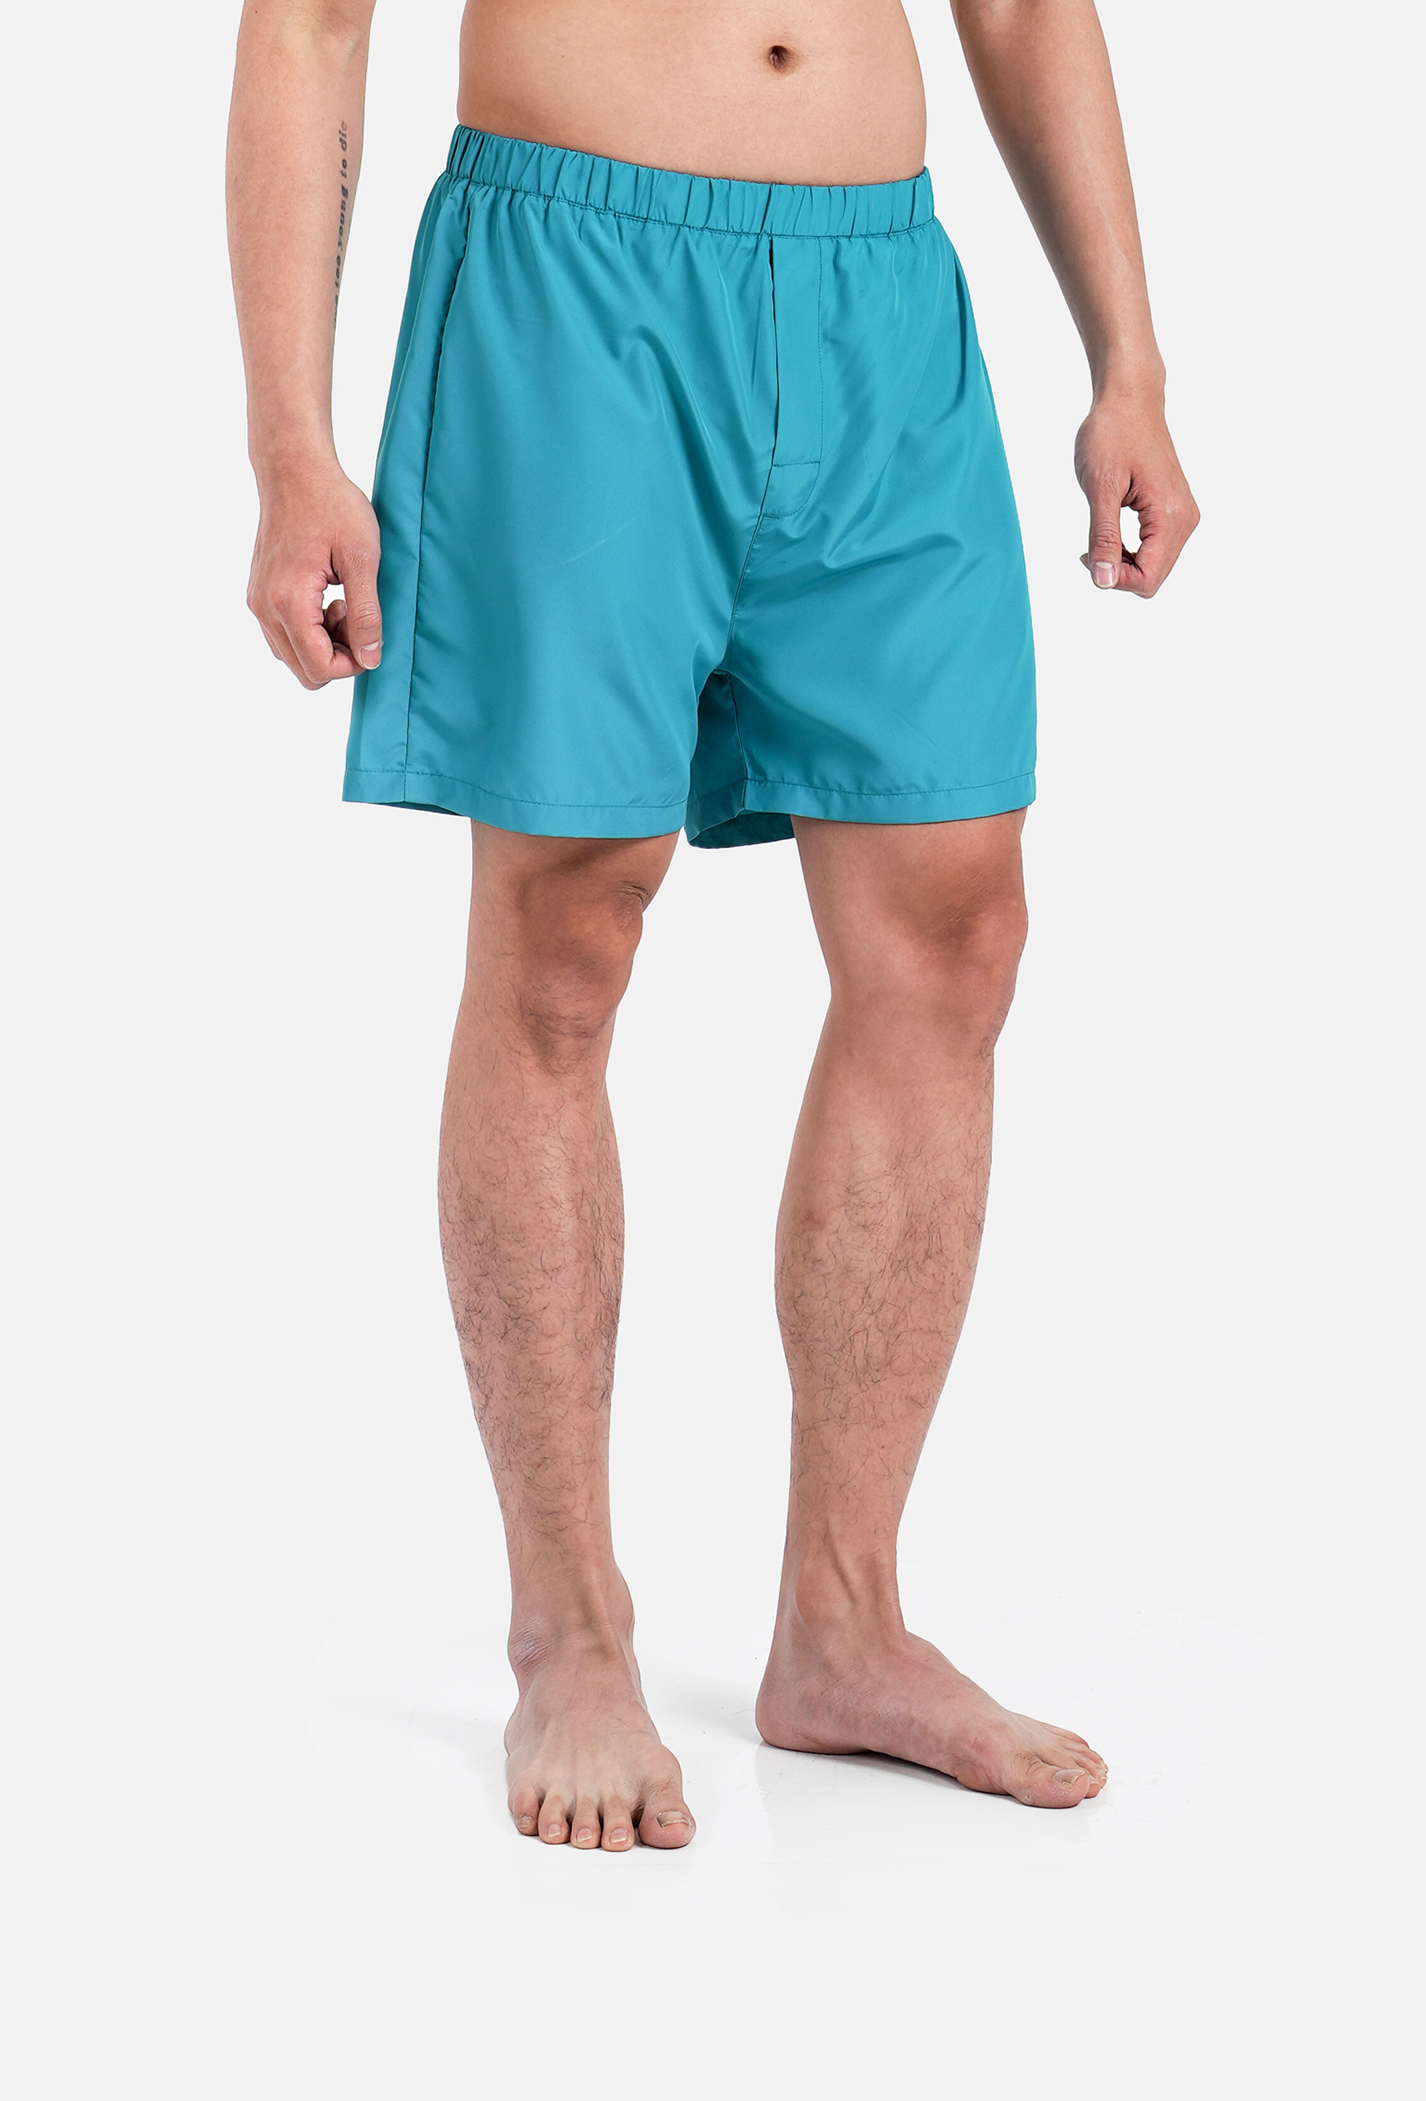 Săn deal - Quần Shorts mặc nhà Coolmate Basics Xanh ngọc 1